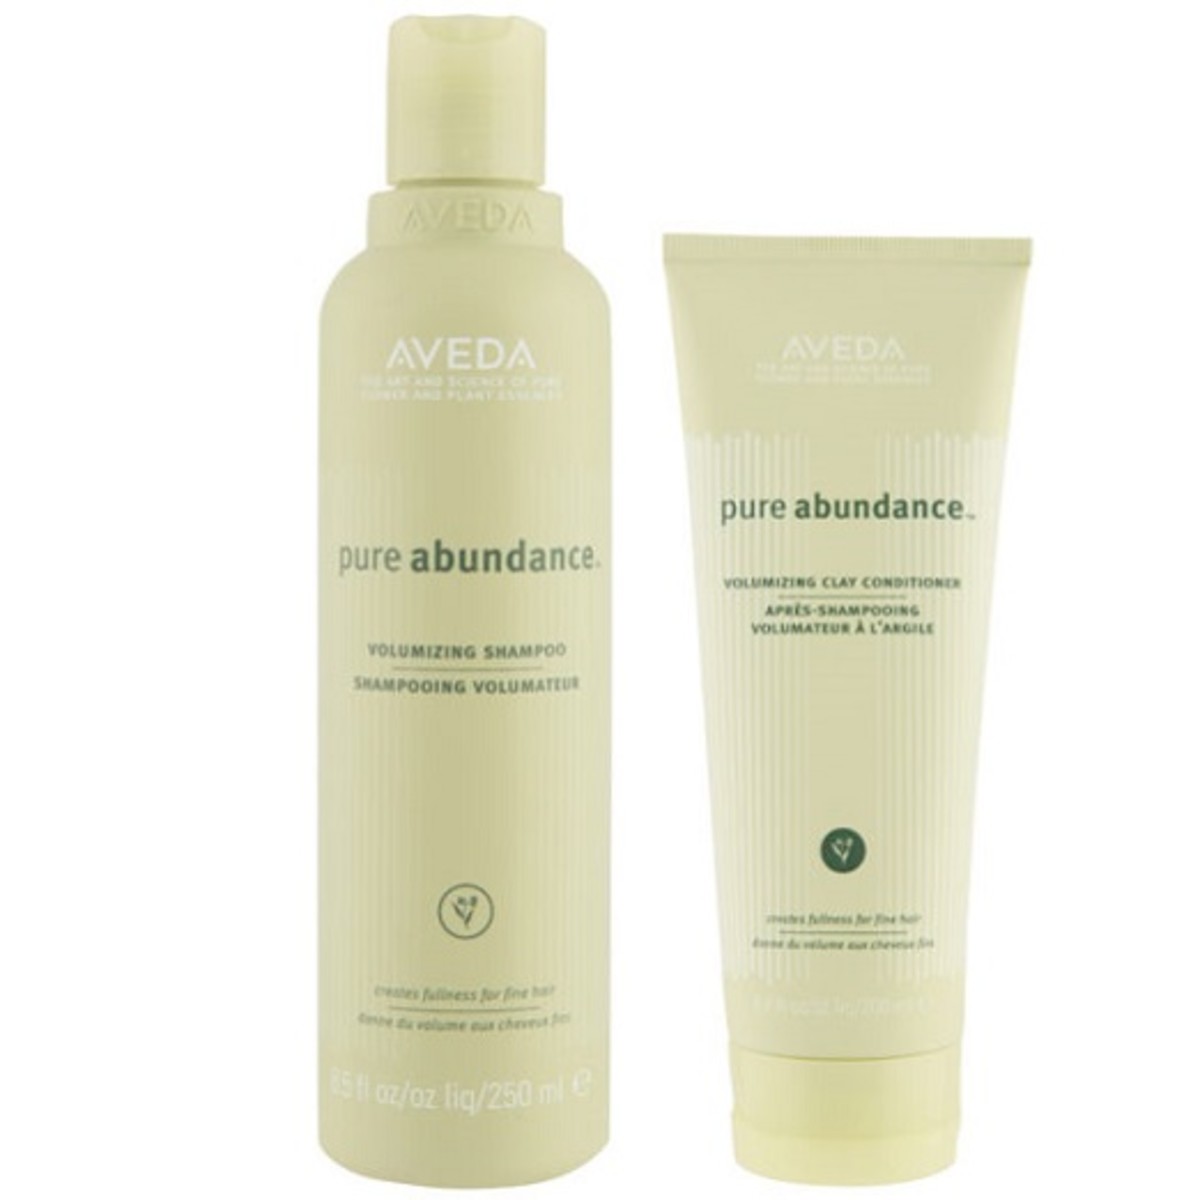 Aveda Pure Abundance Volumizing Shampoo & Pure Abundance Volumizing Clay Conditioner